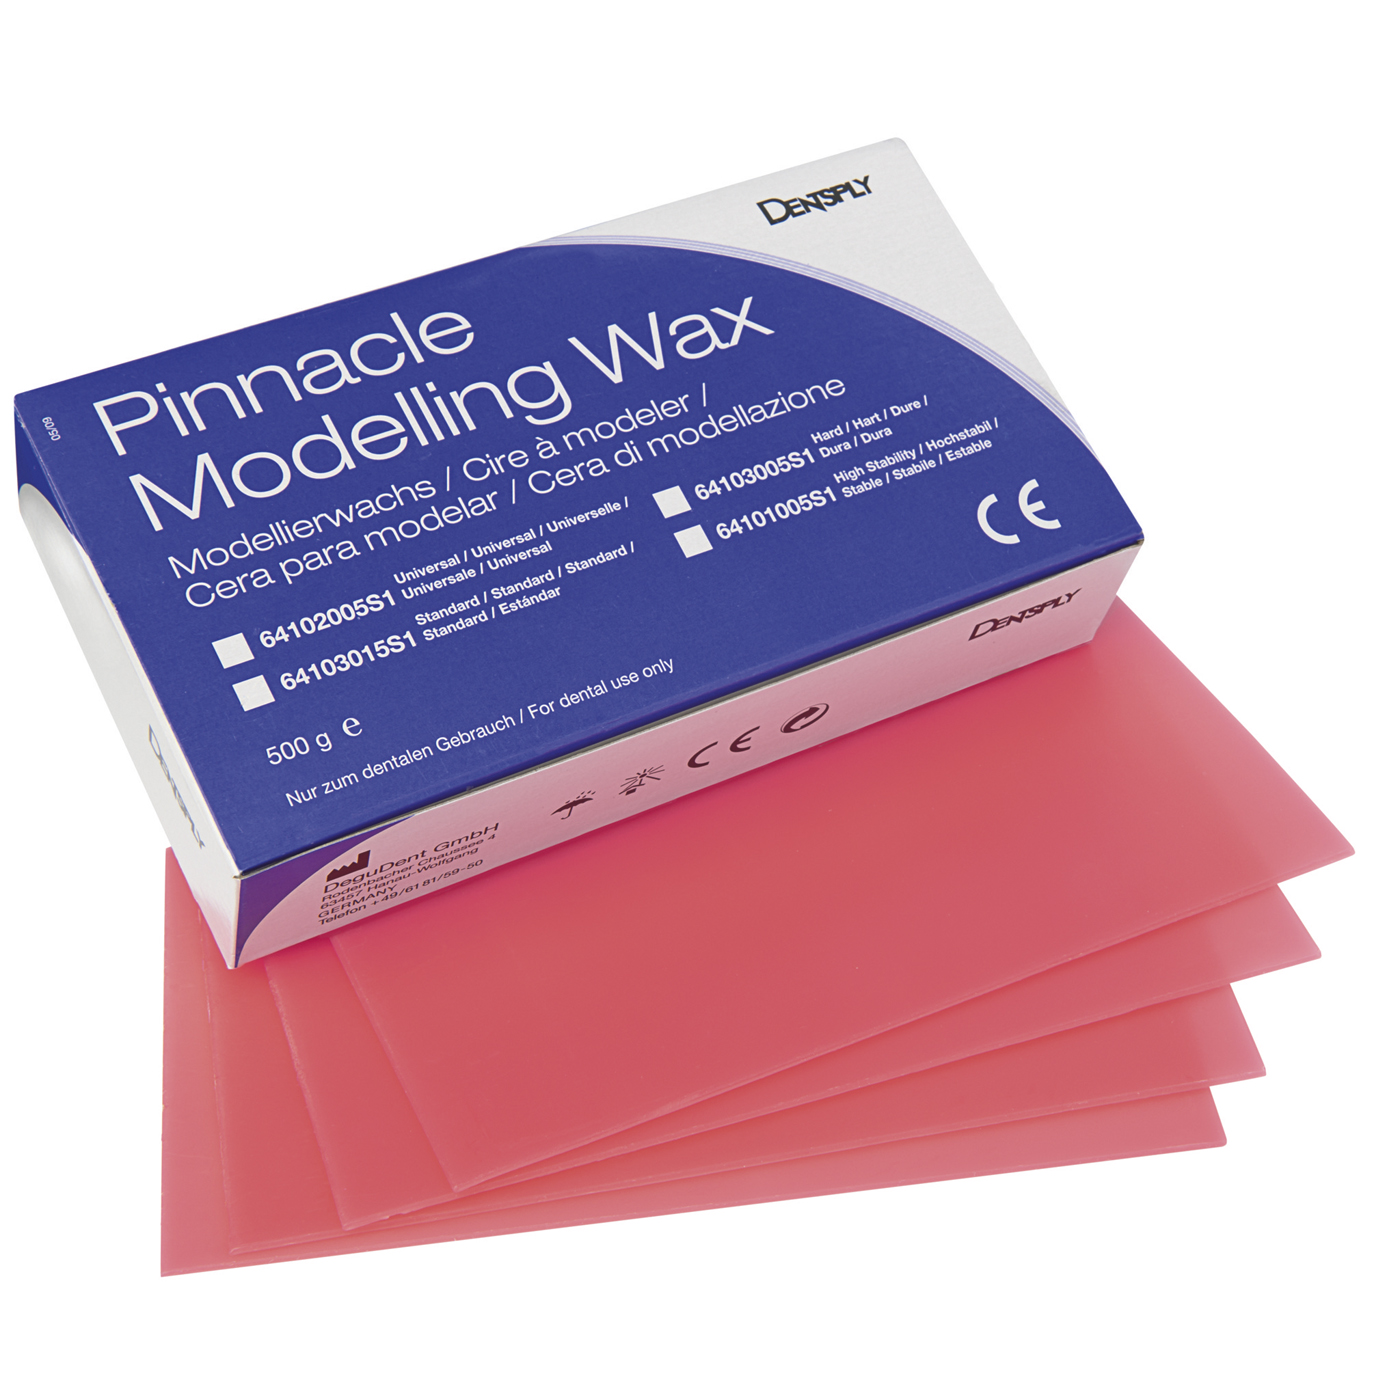 Pinnacle Modelling Wax, Standard, Pink - 500 g